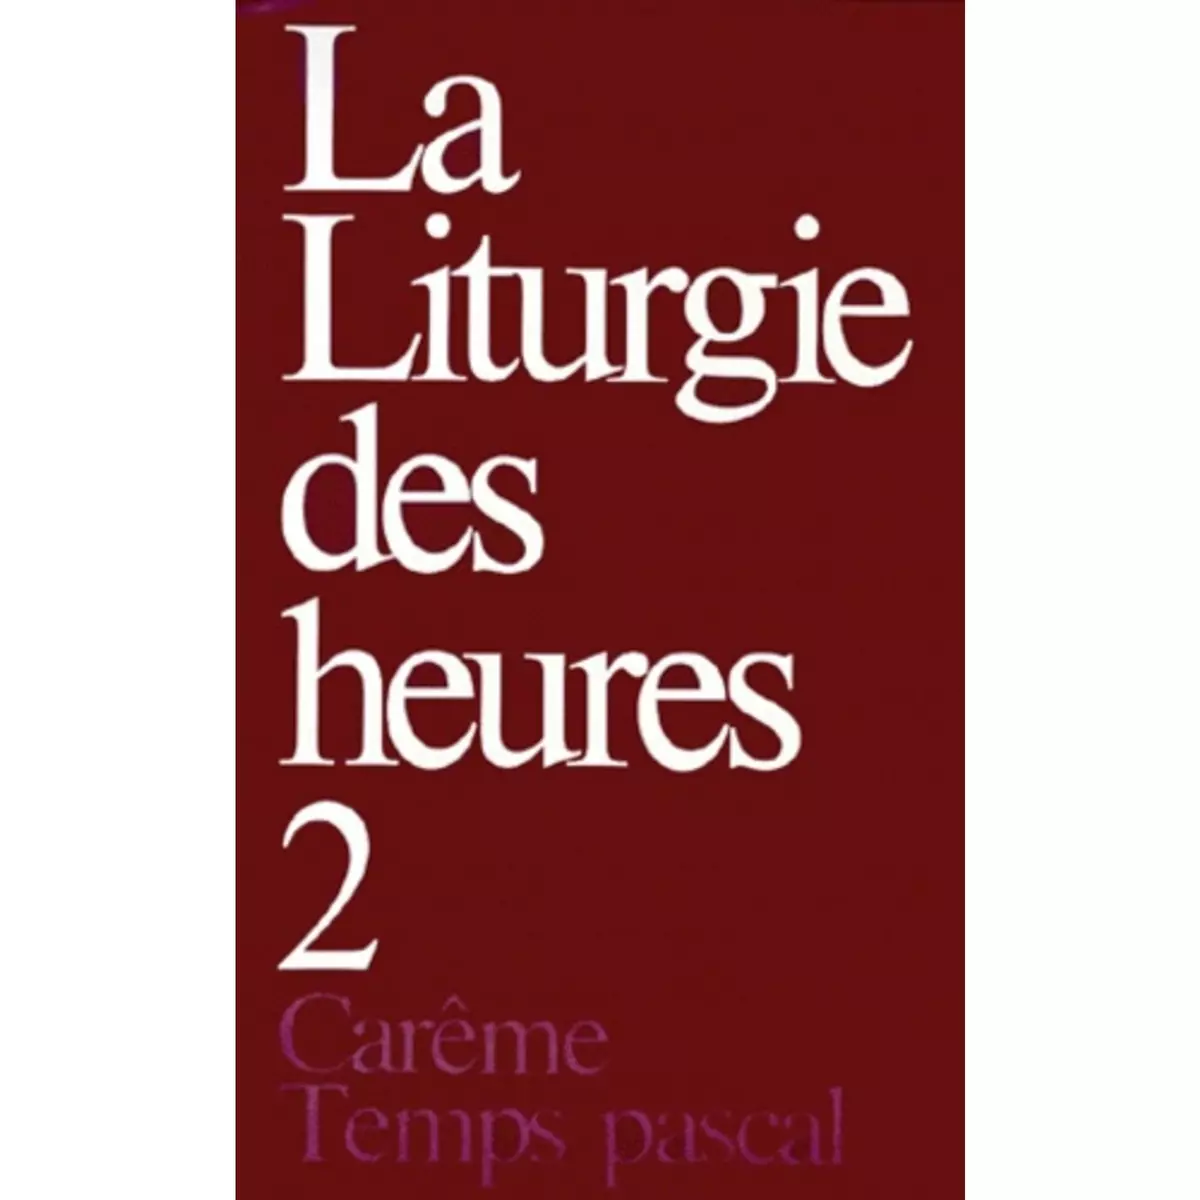  LA LITURGIE DES HEURES. TOME 2, CAREME, TEMPS PASCAL, Desclée-Mame